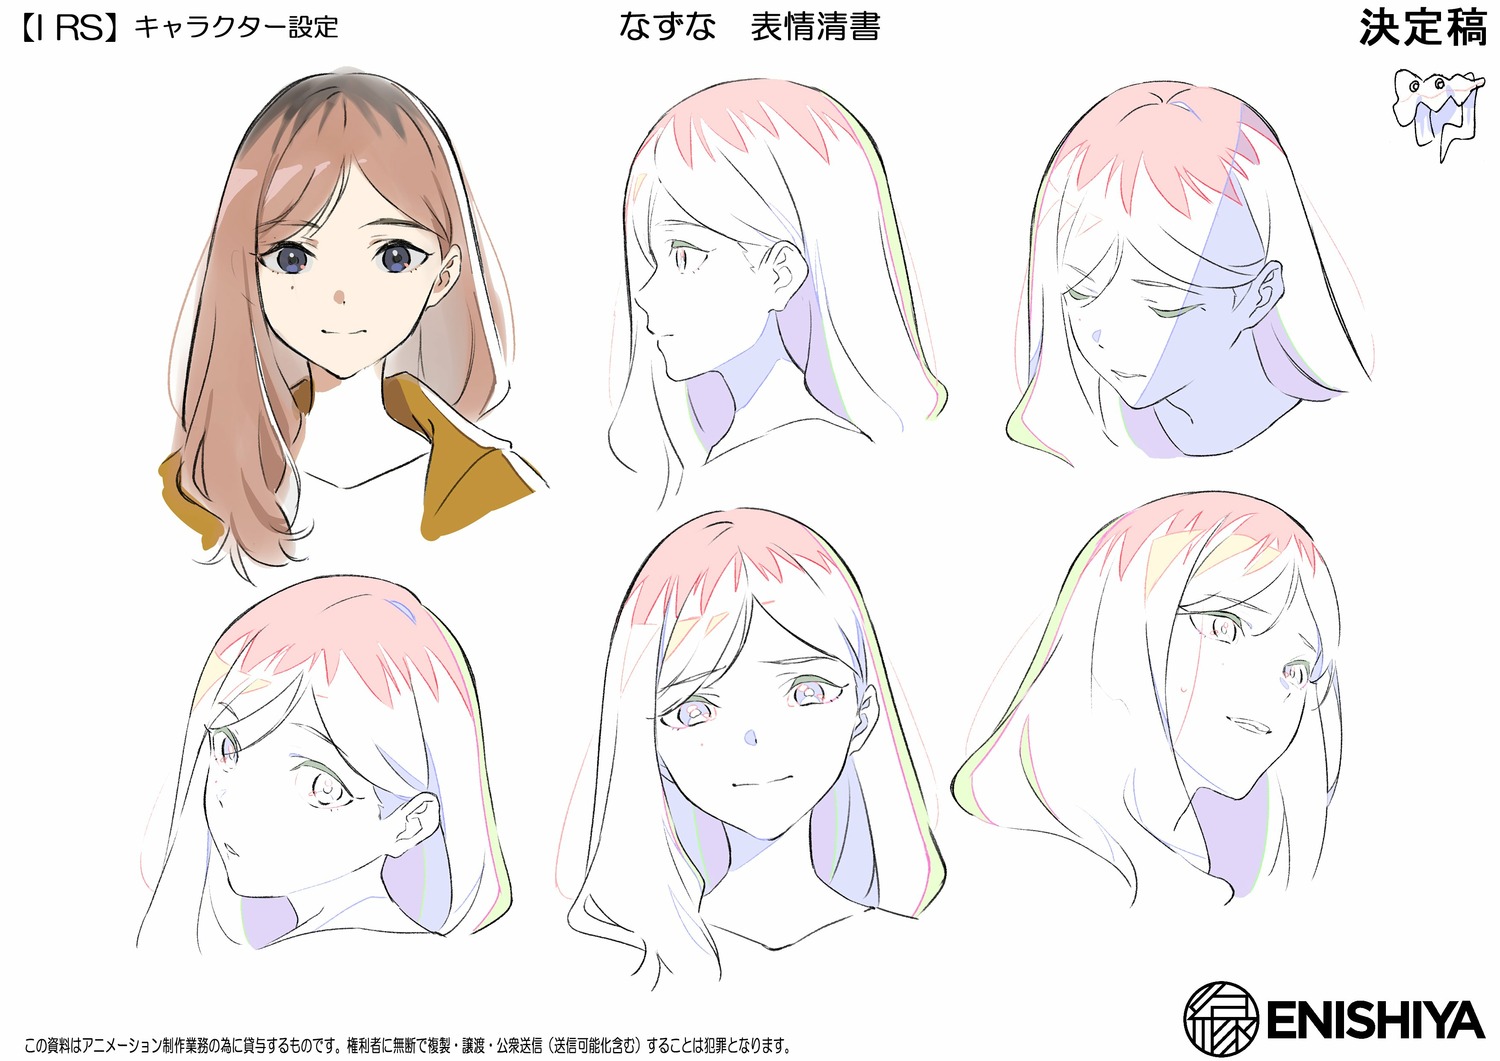 character_design massara mayumi_nakamura production_materials settei